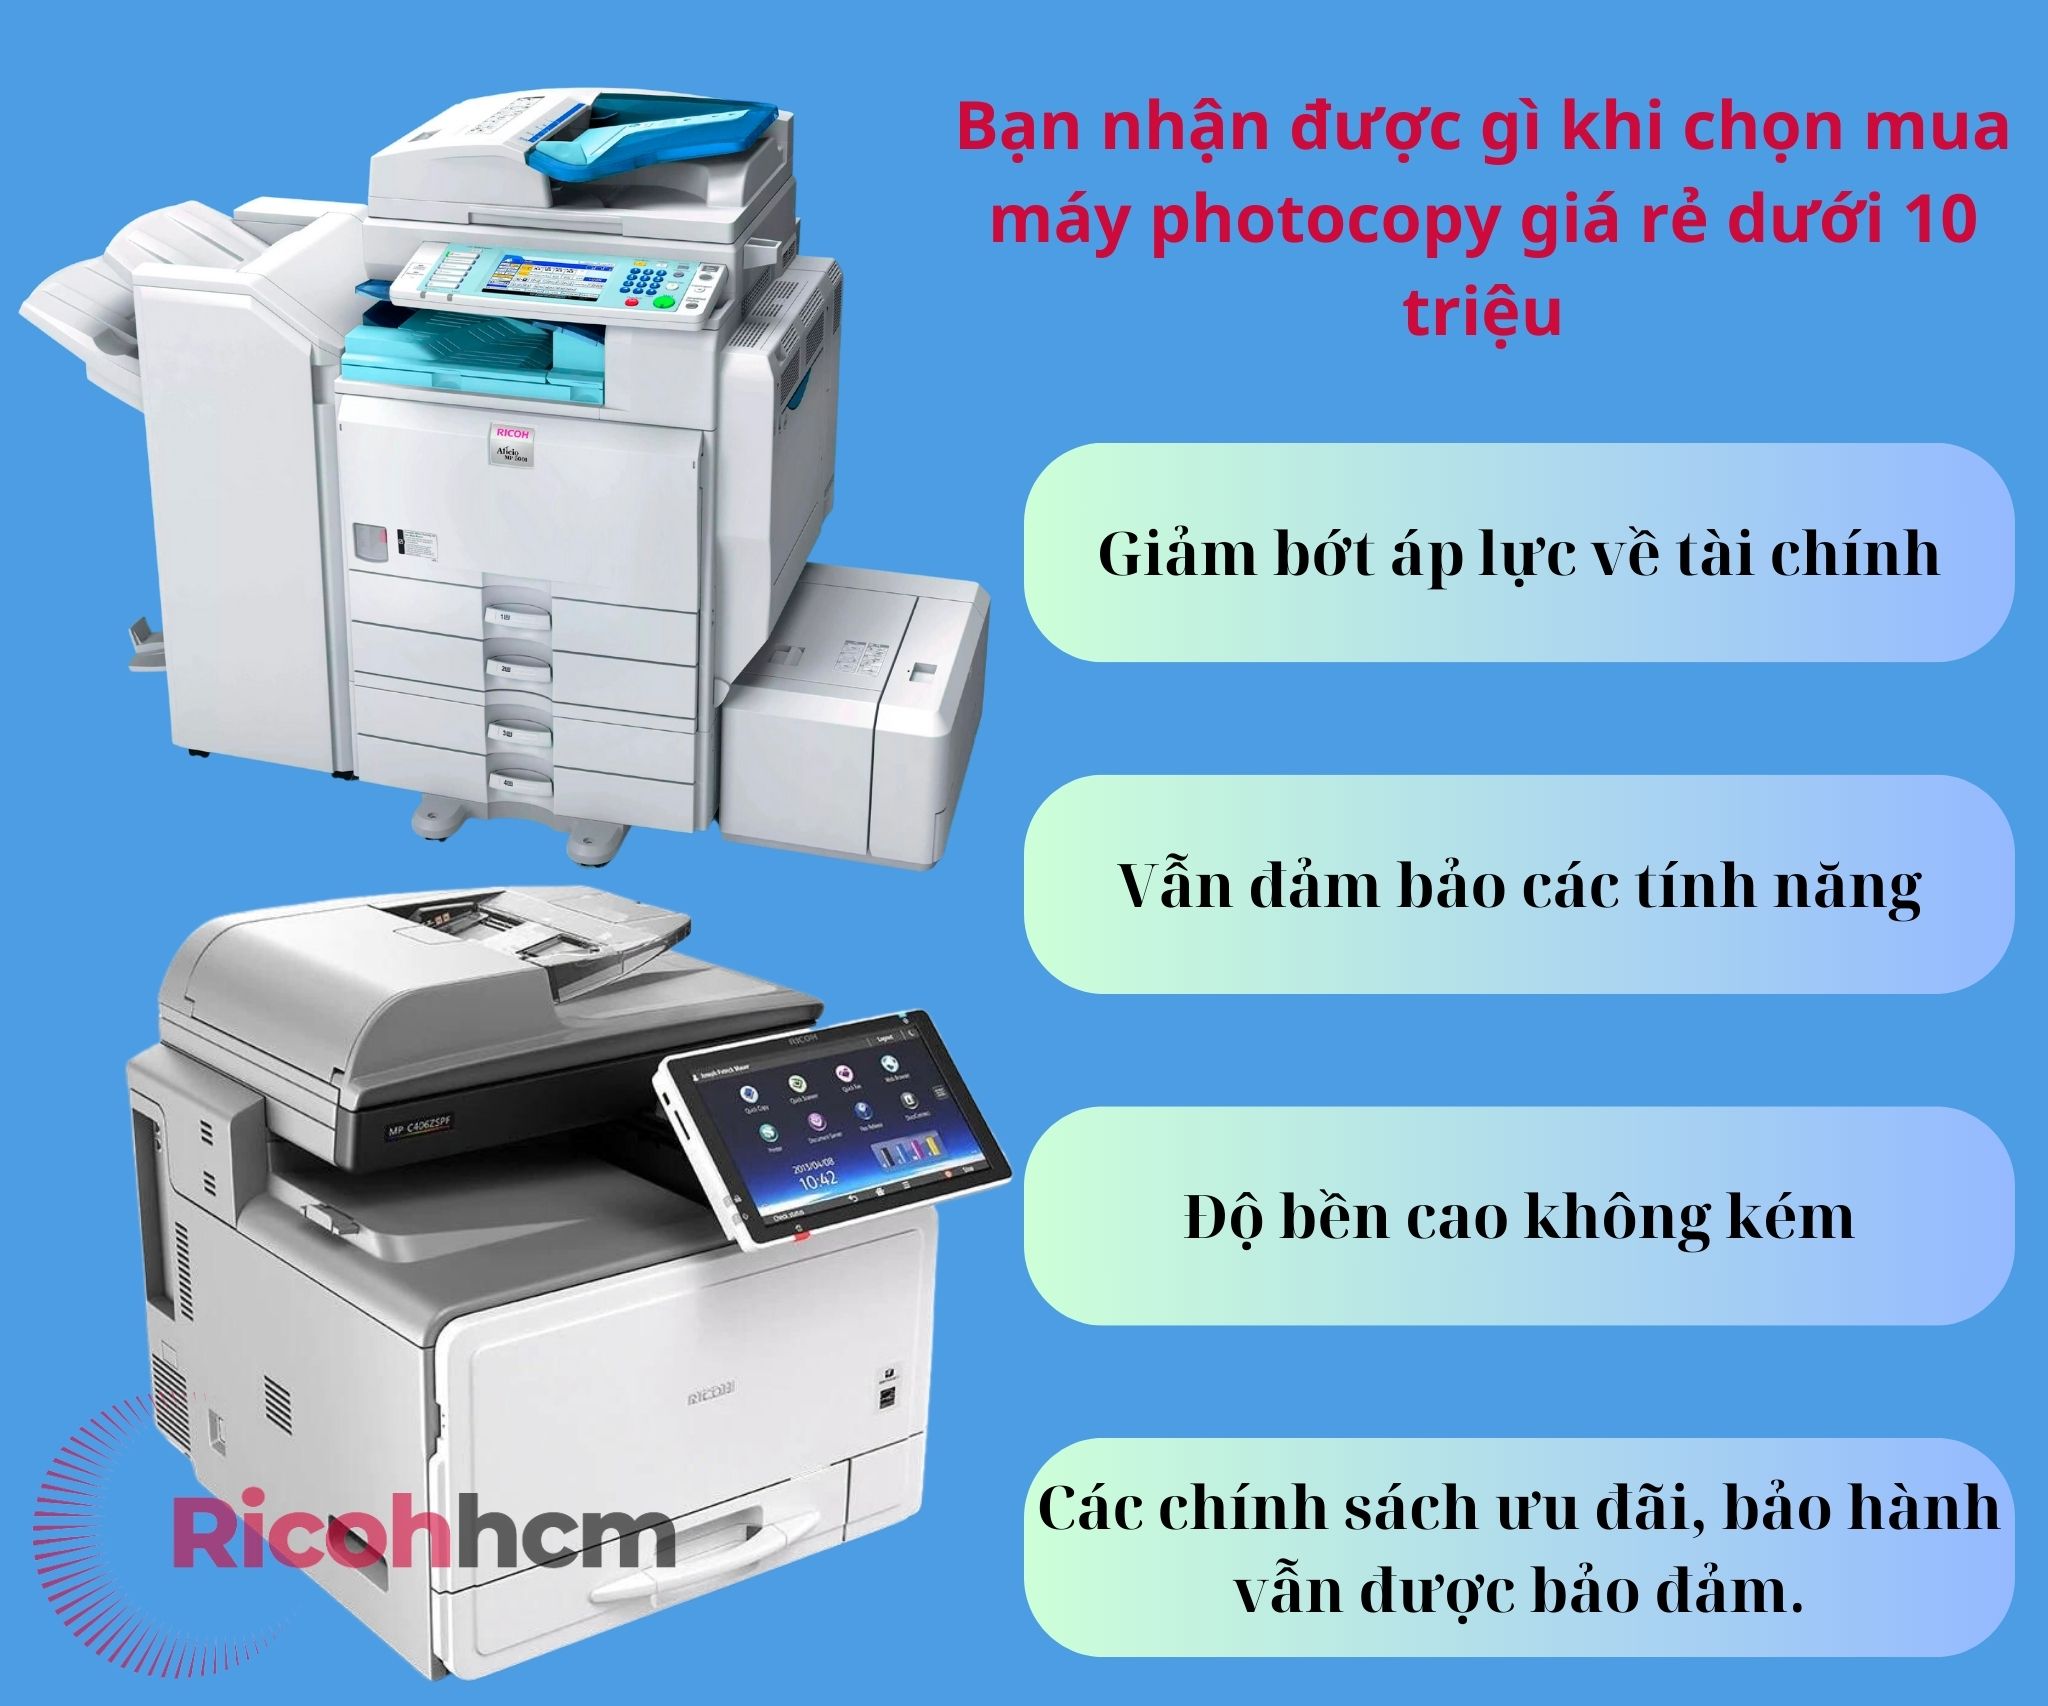 Không khó để có thể tìm mua một chiếc máy photocopy giá rẻ dưới 10 triệu . Nhu cầu sử dụng máy photocopy giá rẻ dần tăng cao bởi những giá trị mà dòng thiết bị này đem lại cho người dùng.